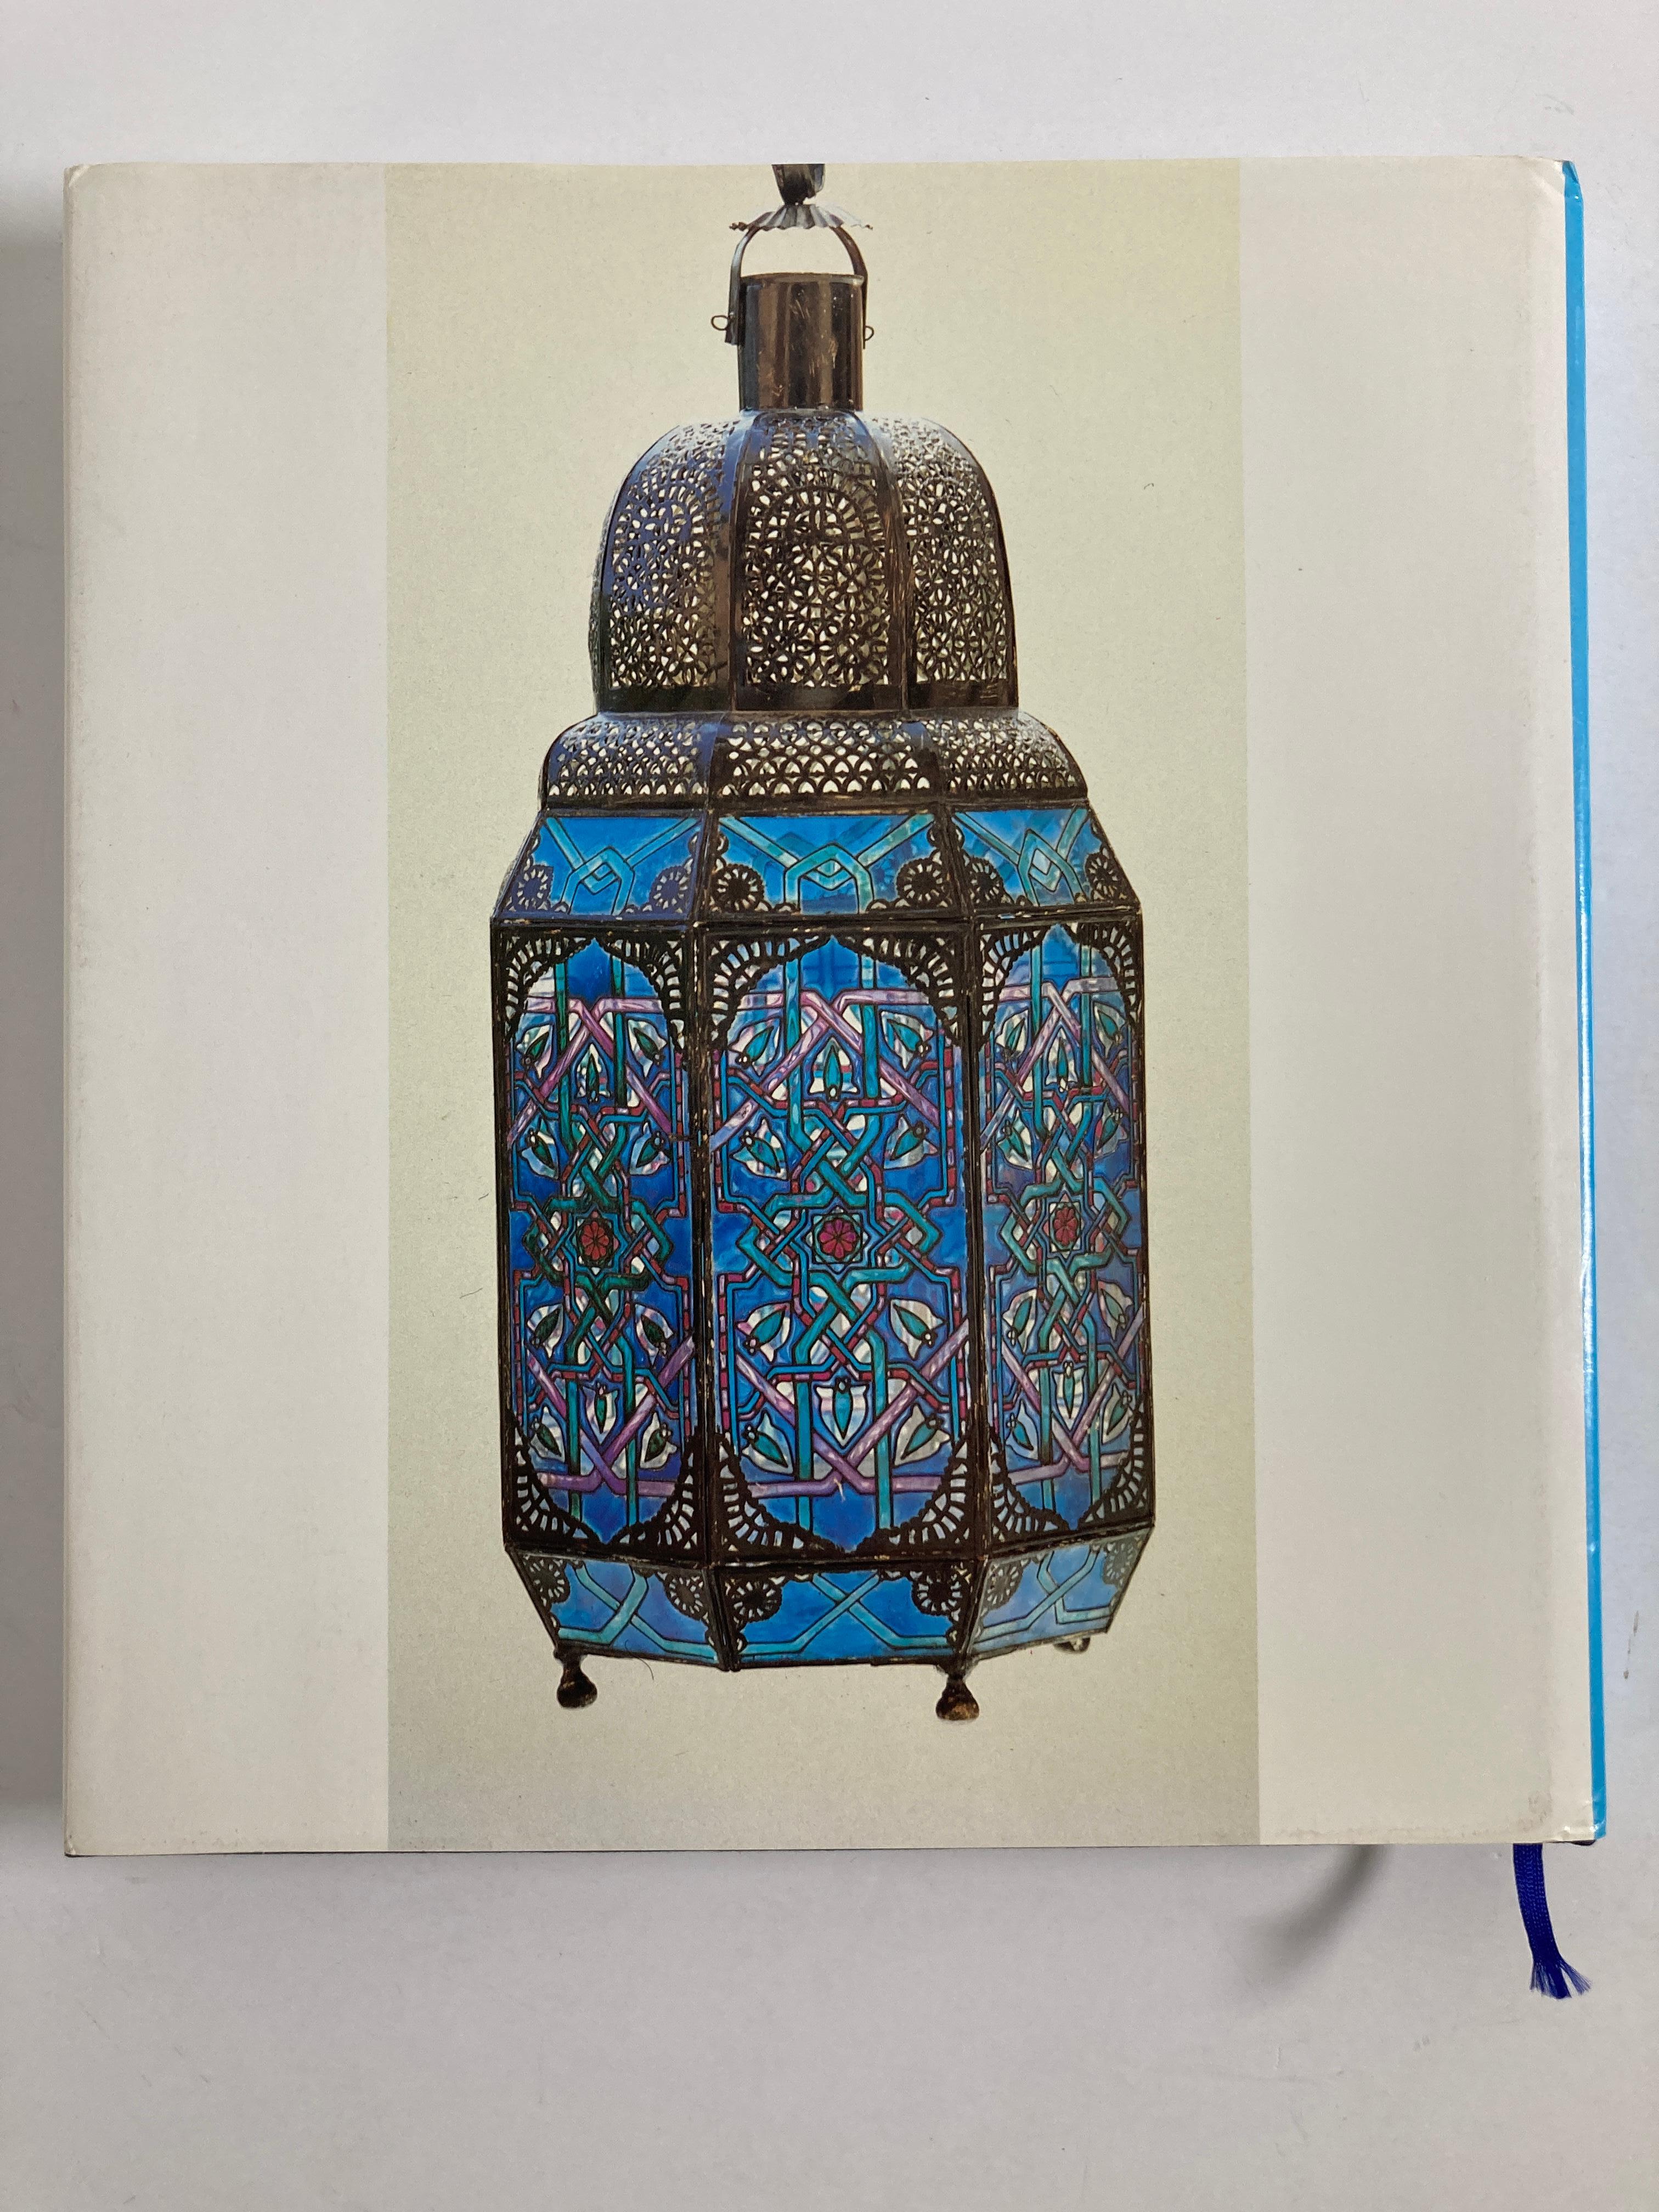 Die traditionellen Künste in Marokko.
(Traditionelle Künste in Marokko)
(Französische Ausgabe) Von Dr. Mohamed Sijelmassi
264 Seiten, 317 große Farbfotos von Schmuck, Möbeln, Keramikobjekten, Textilien, Fliesen und anderen Beispielen traditioneller